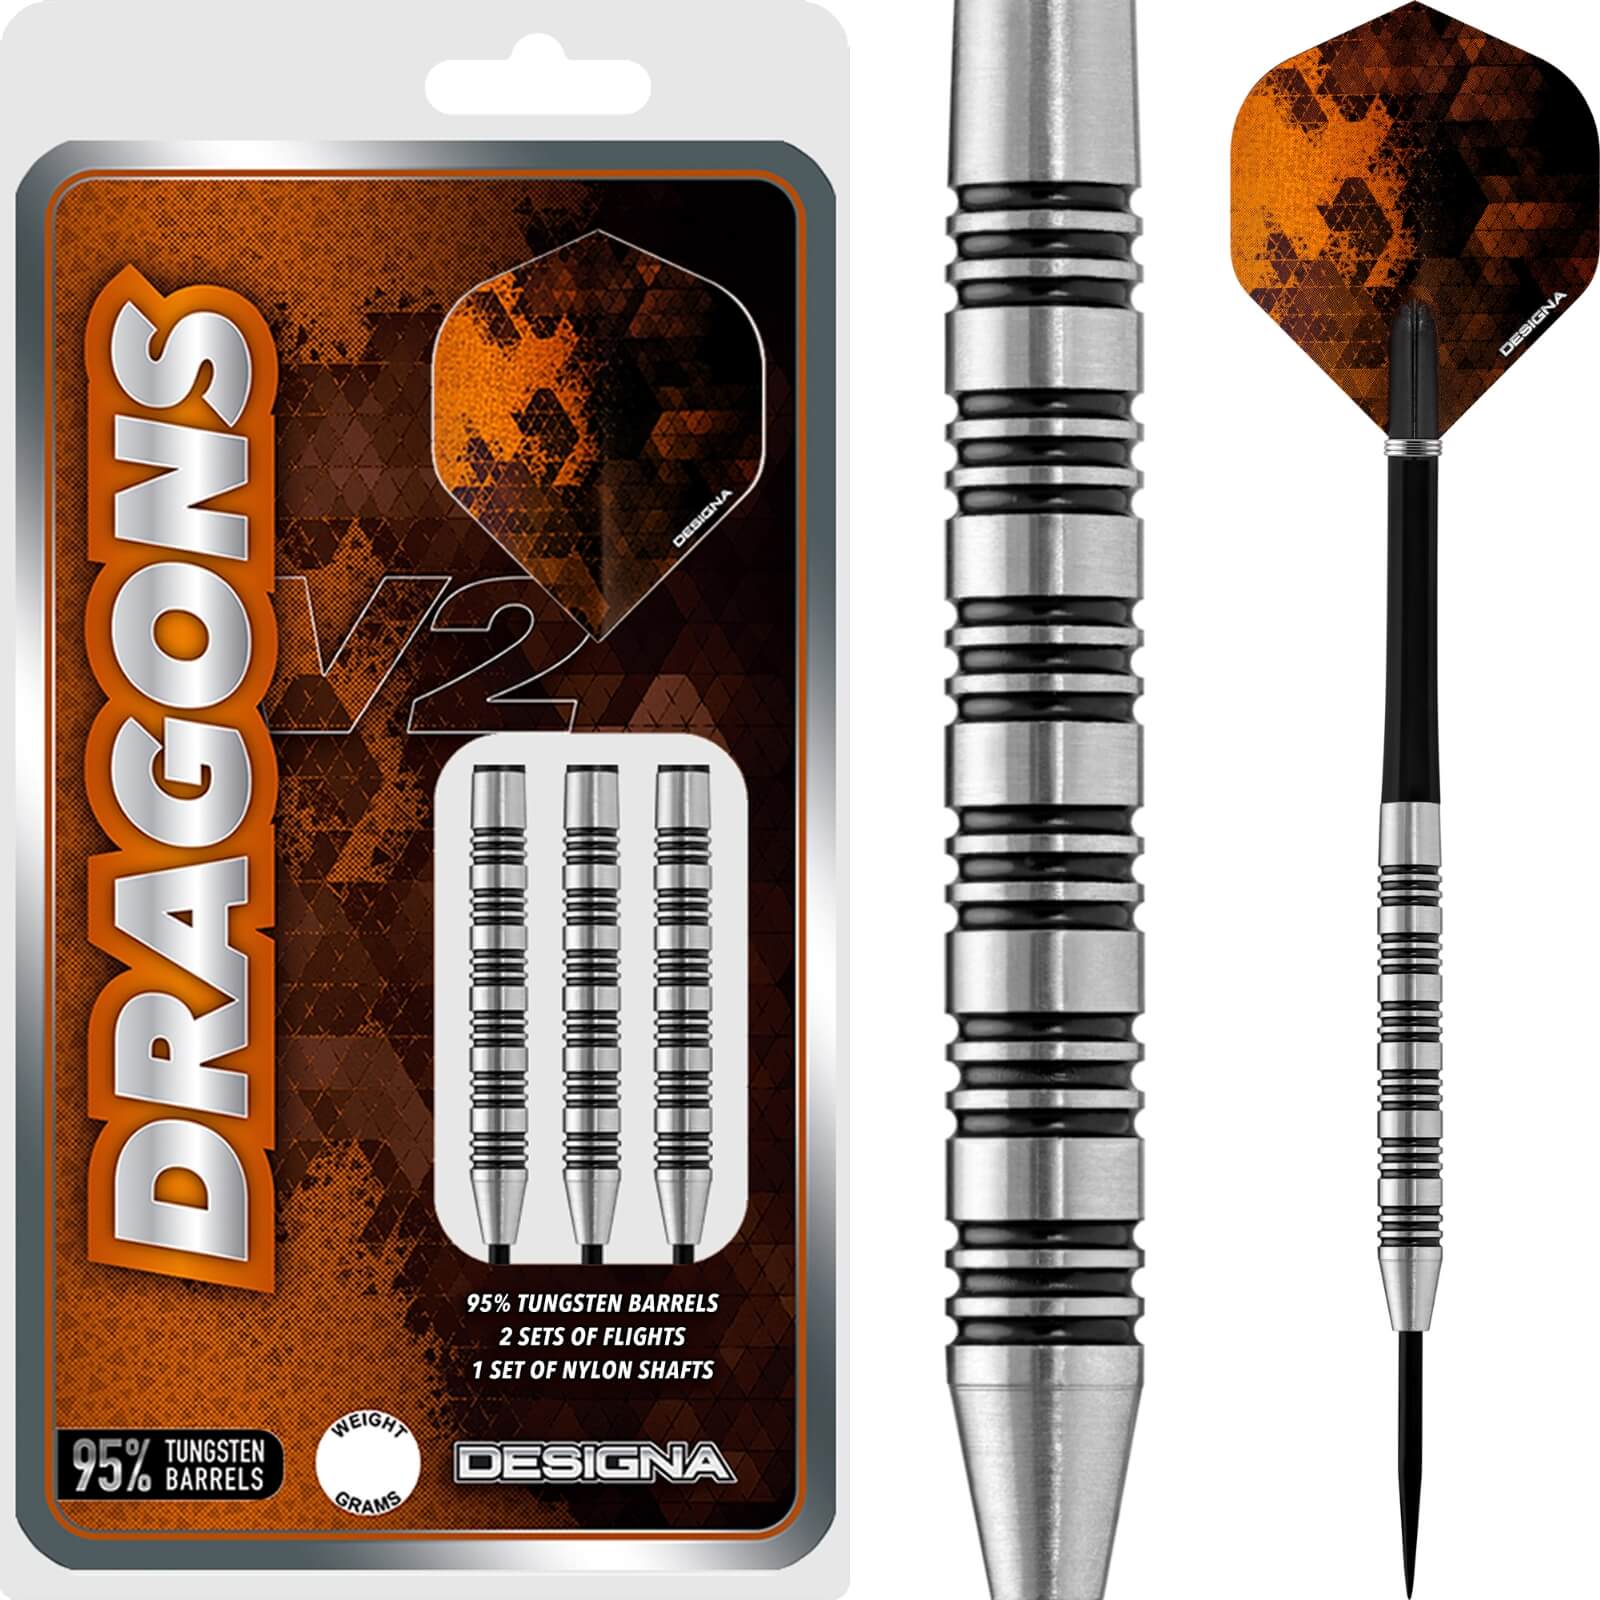 Darts - Designa - Dragons 95 V2 M1 Darts - Steel Tip - 95% Tungsten - 21g 23g 25g 